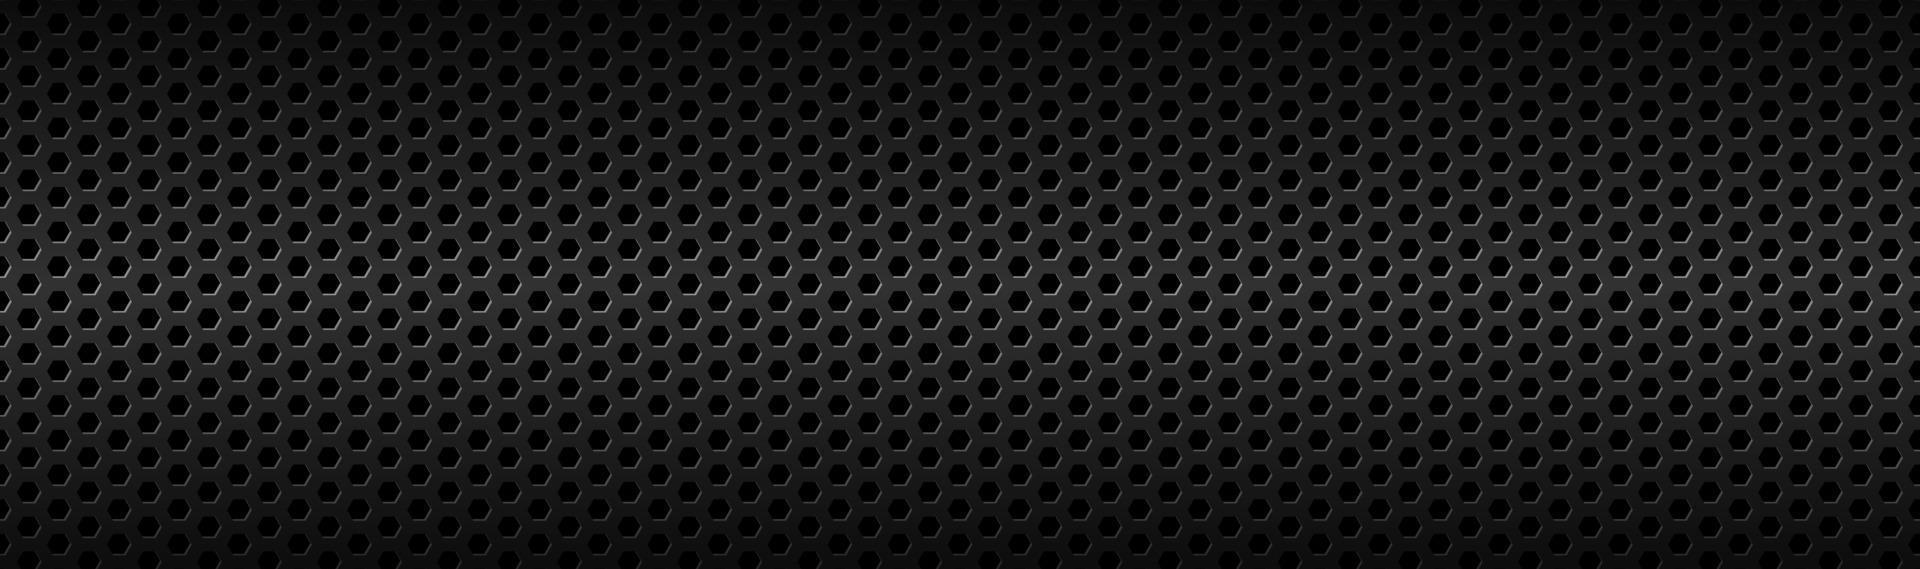 abstrakt mörk svart geometriska sexkantiga mesh material rubrik teknik banner med tomt utrymme för din logo vektor abstrakt widescreen bakgrund